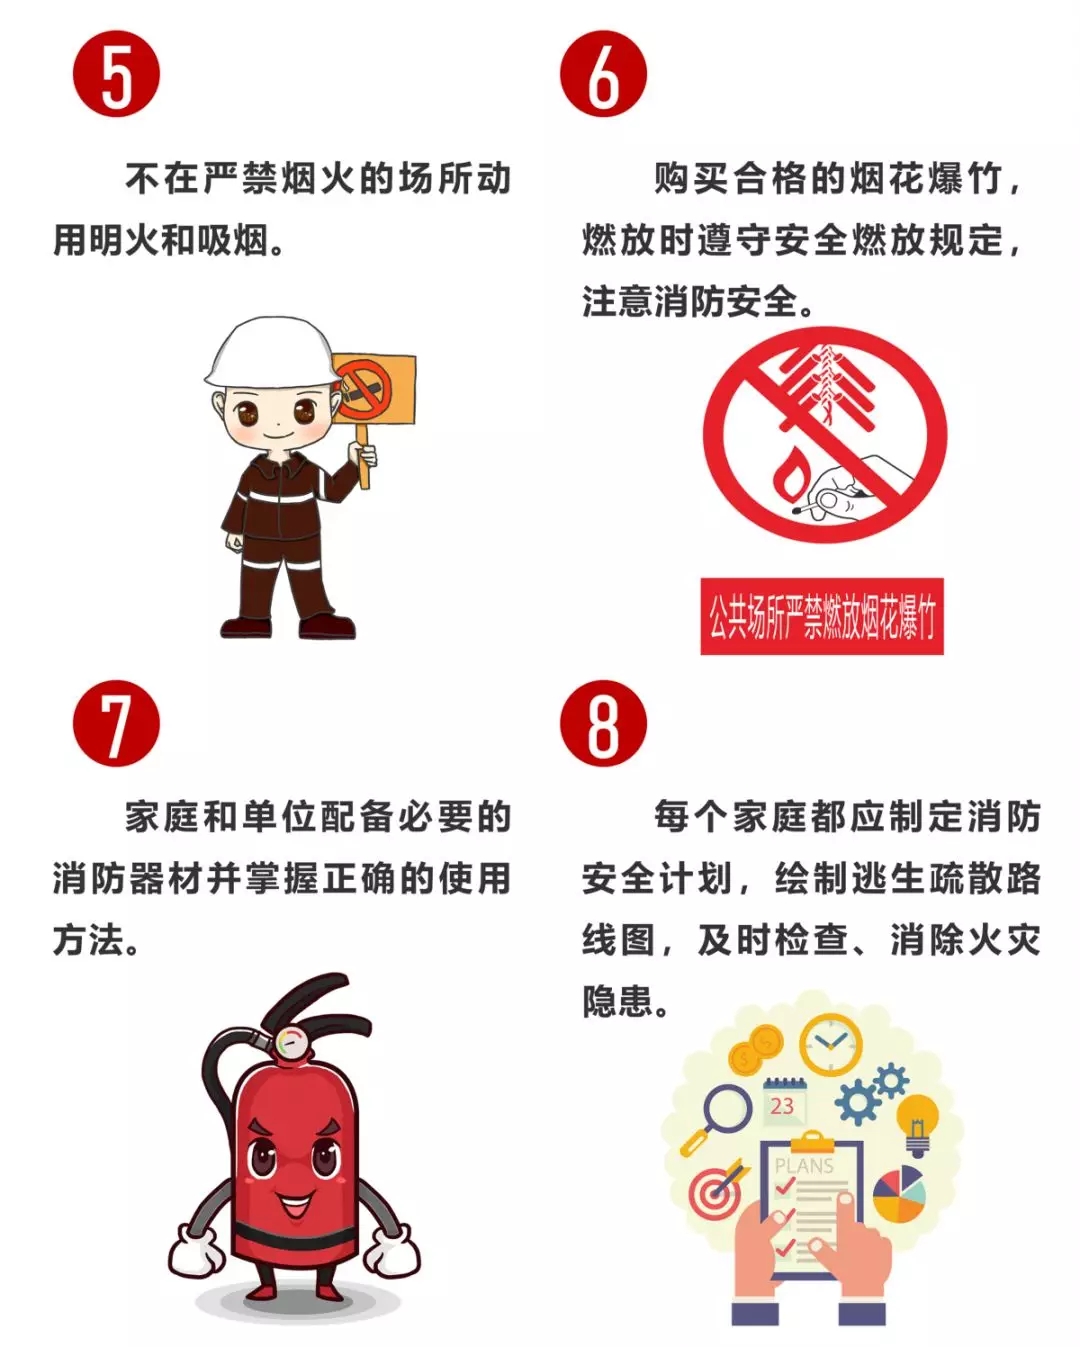 预防火灾五条措施图片